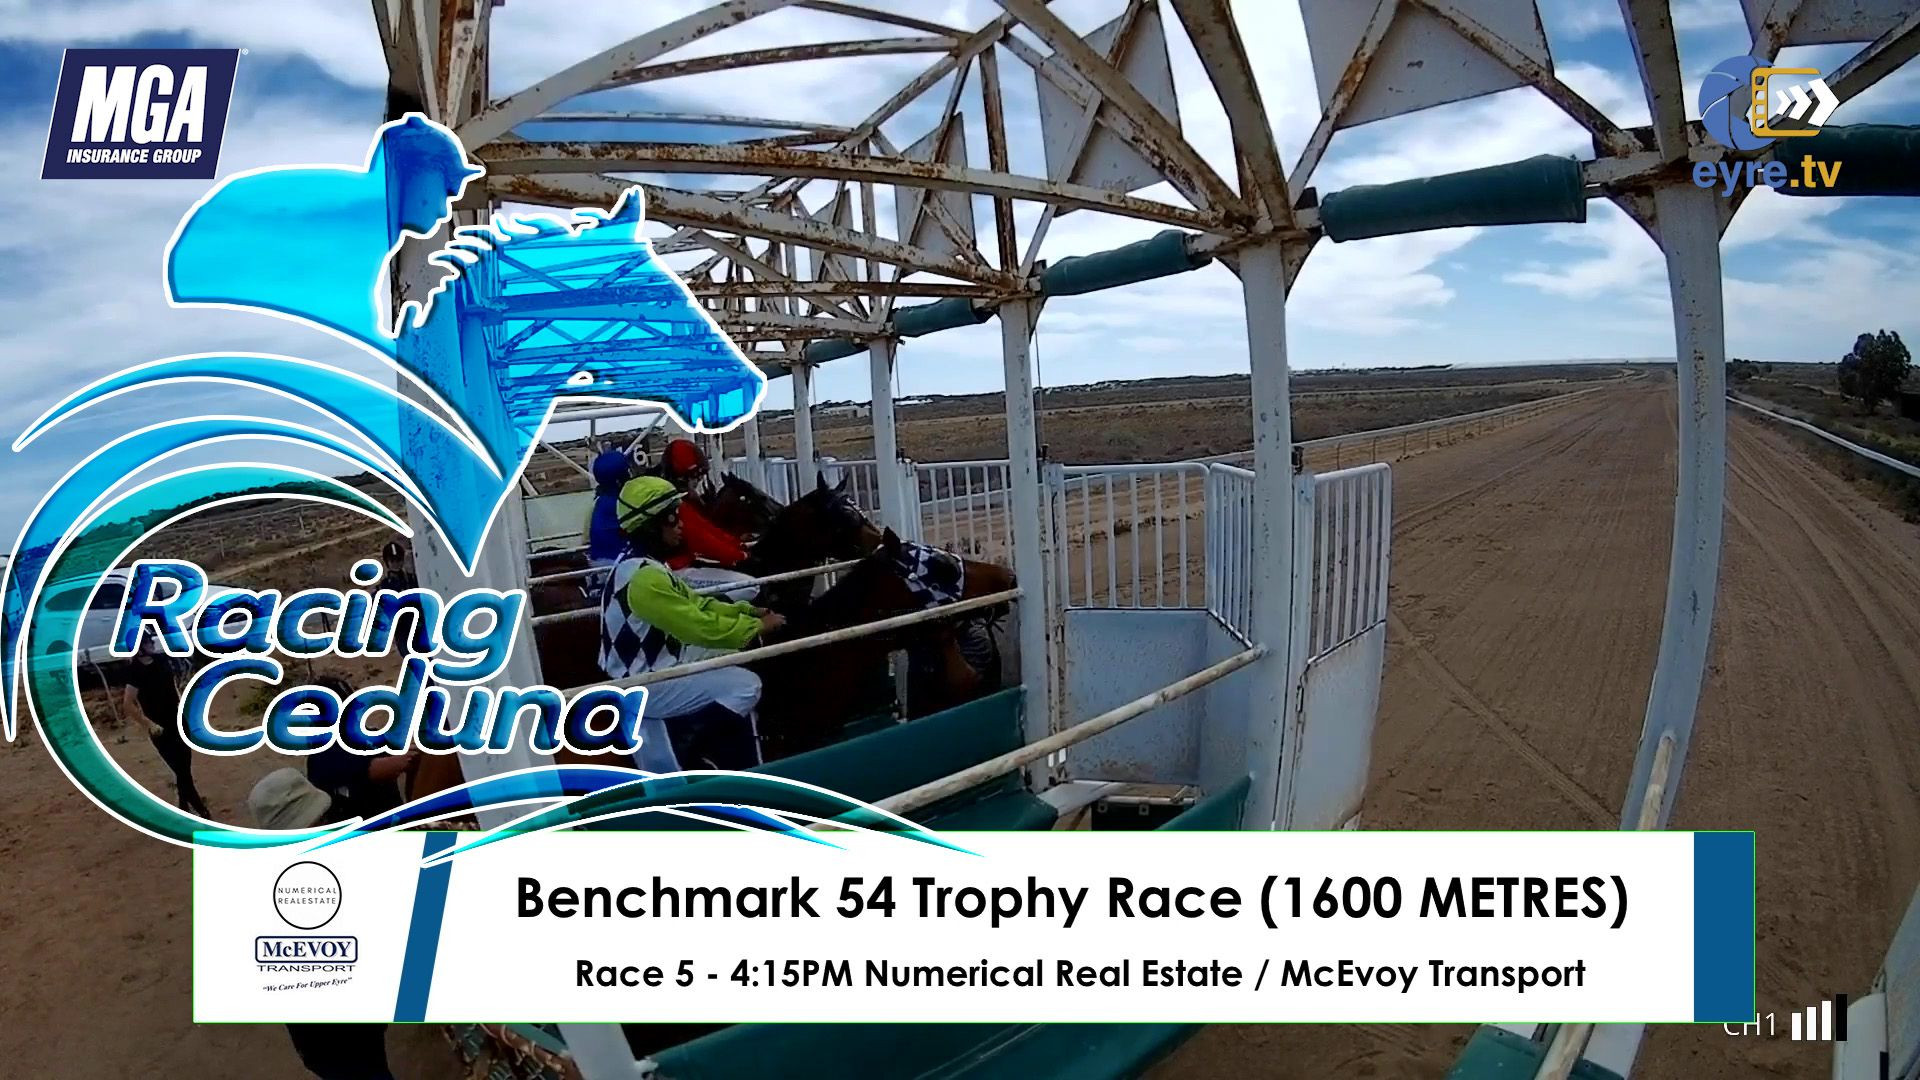 Ceduna Christmas Races - Race 5. Benchmark 54 Trophy Race (1600 METRES)